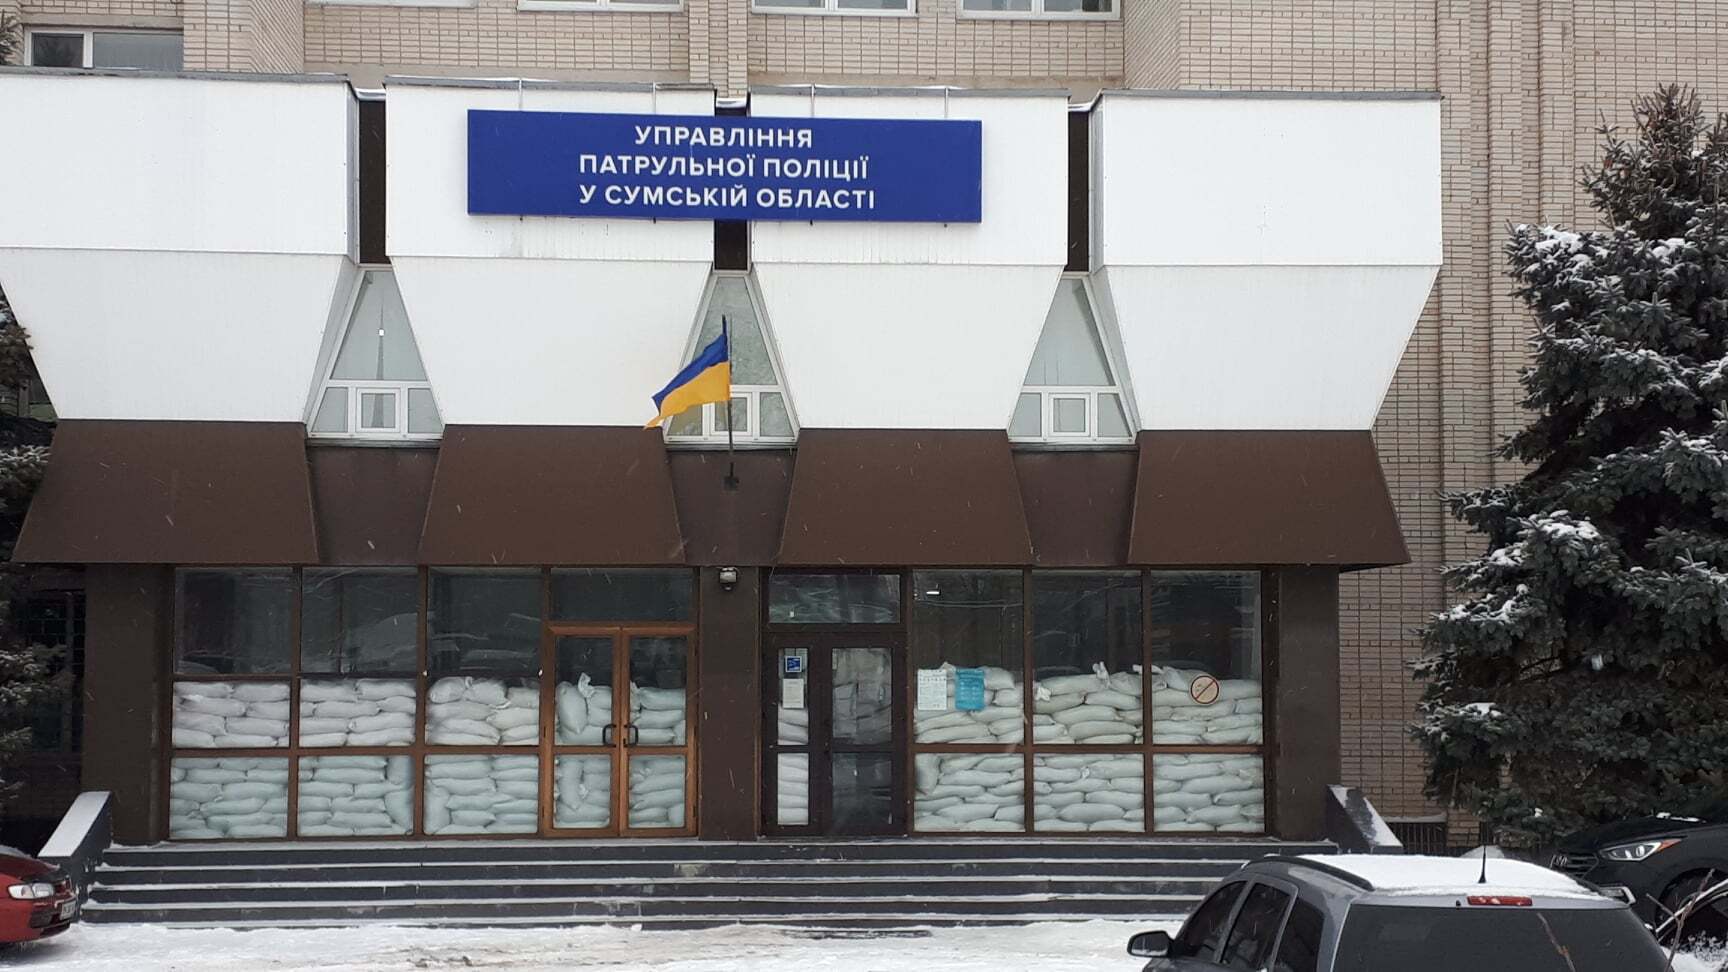 Вход в Управление патрульной полиции Сумской области закрыли мешками.